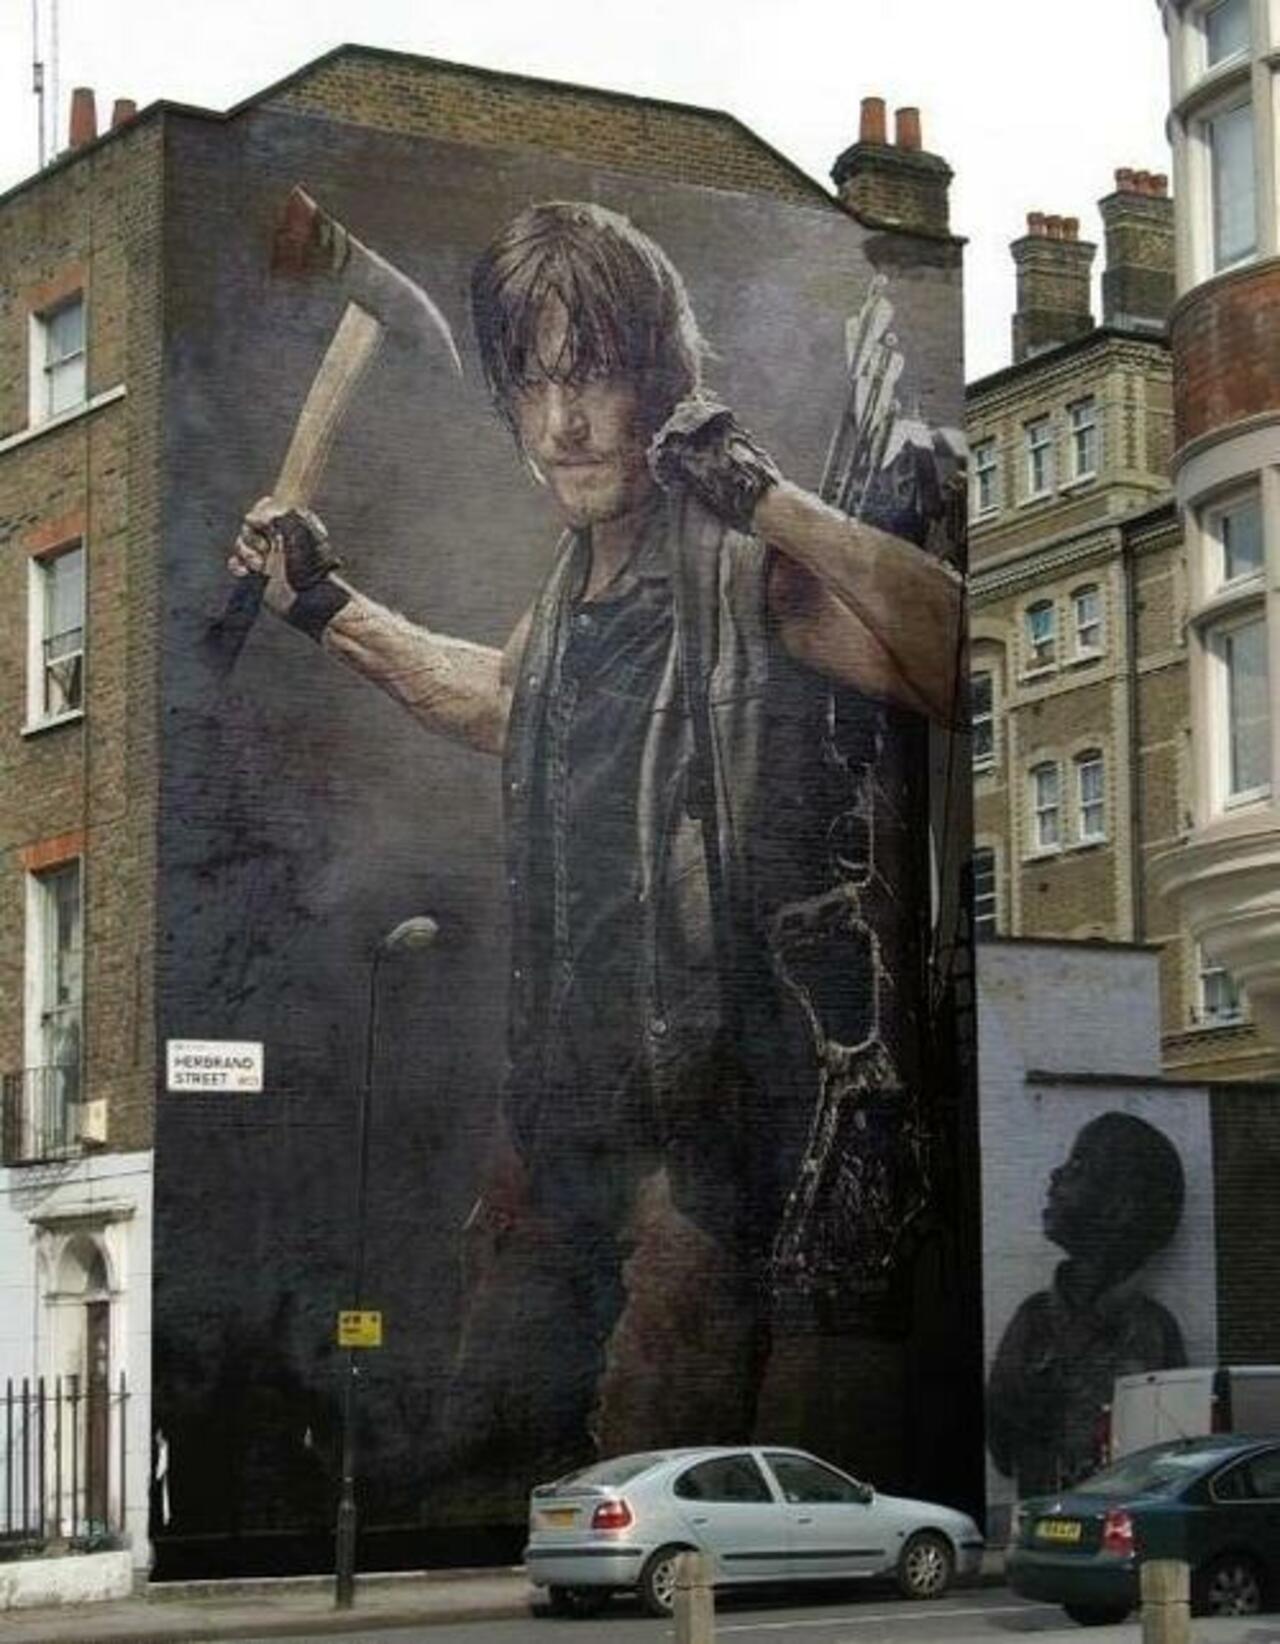 RT @streetartersite: @WalkingDead_AMC Huge #DarylDixon #mural in #London #Uk #TheWalkingDead #streetart #graffiti http://www.streetarter.com http://t.co/TorsylTUrK